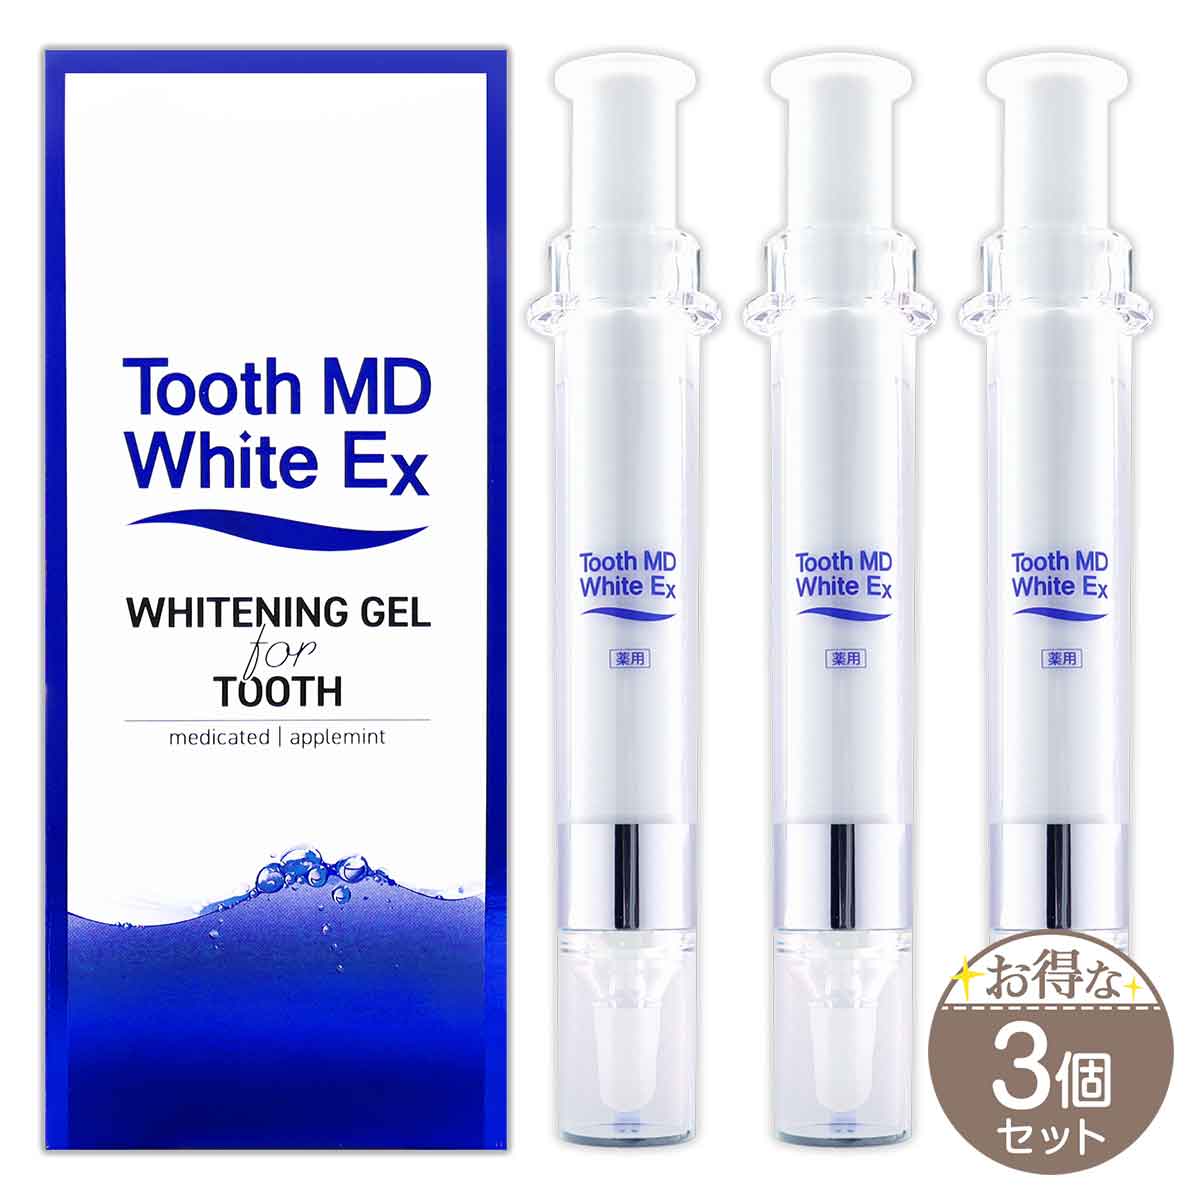 【 3個セット 】 トゥースMDホワイトEX Tooth MD White Ex 11ml ( 約3